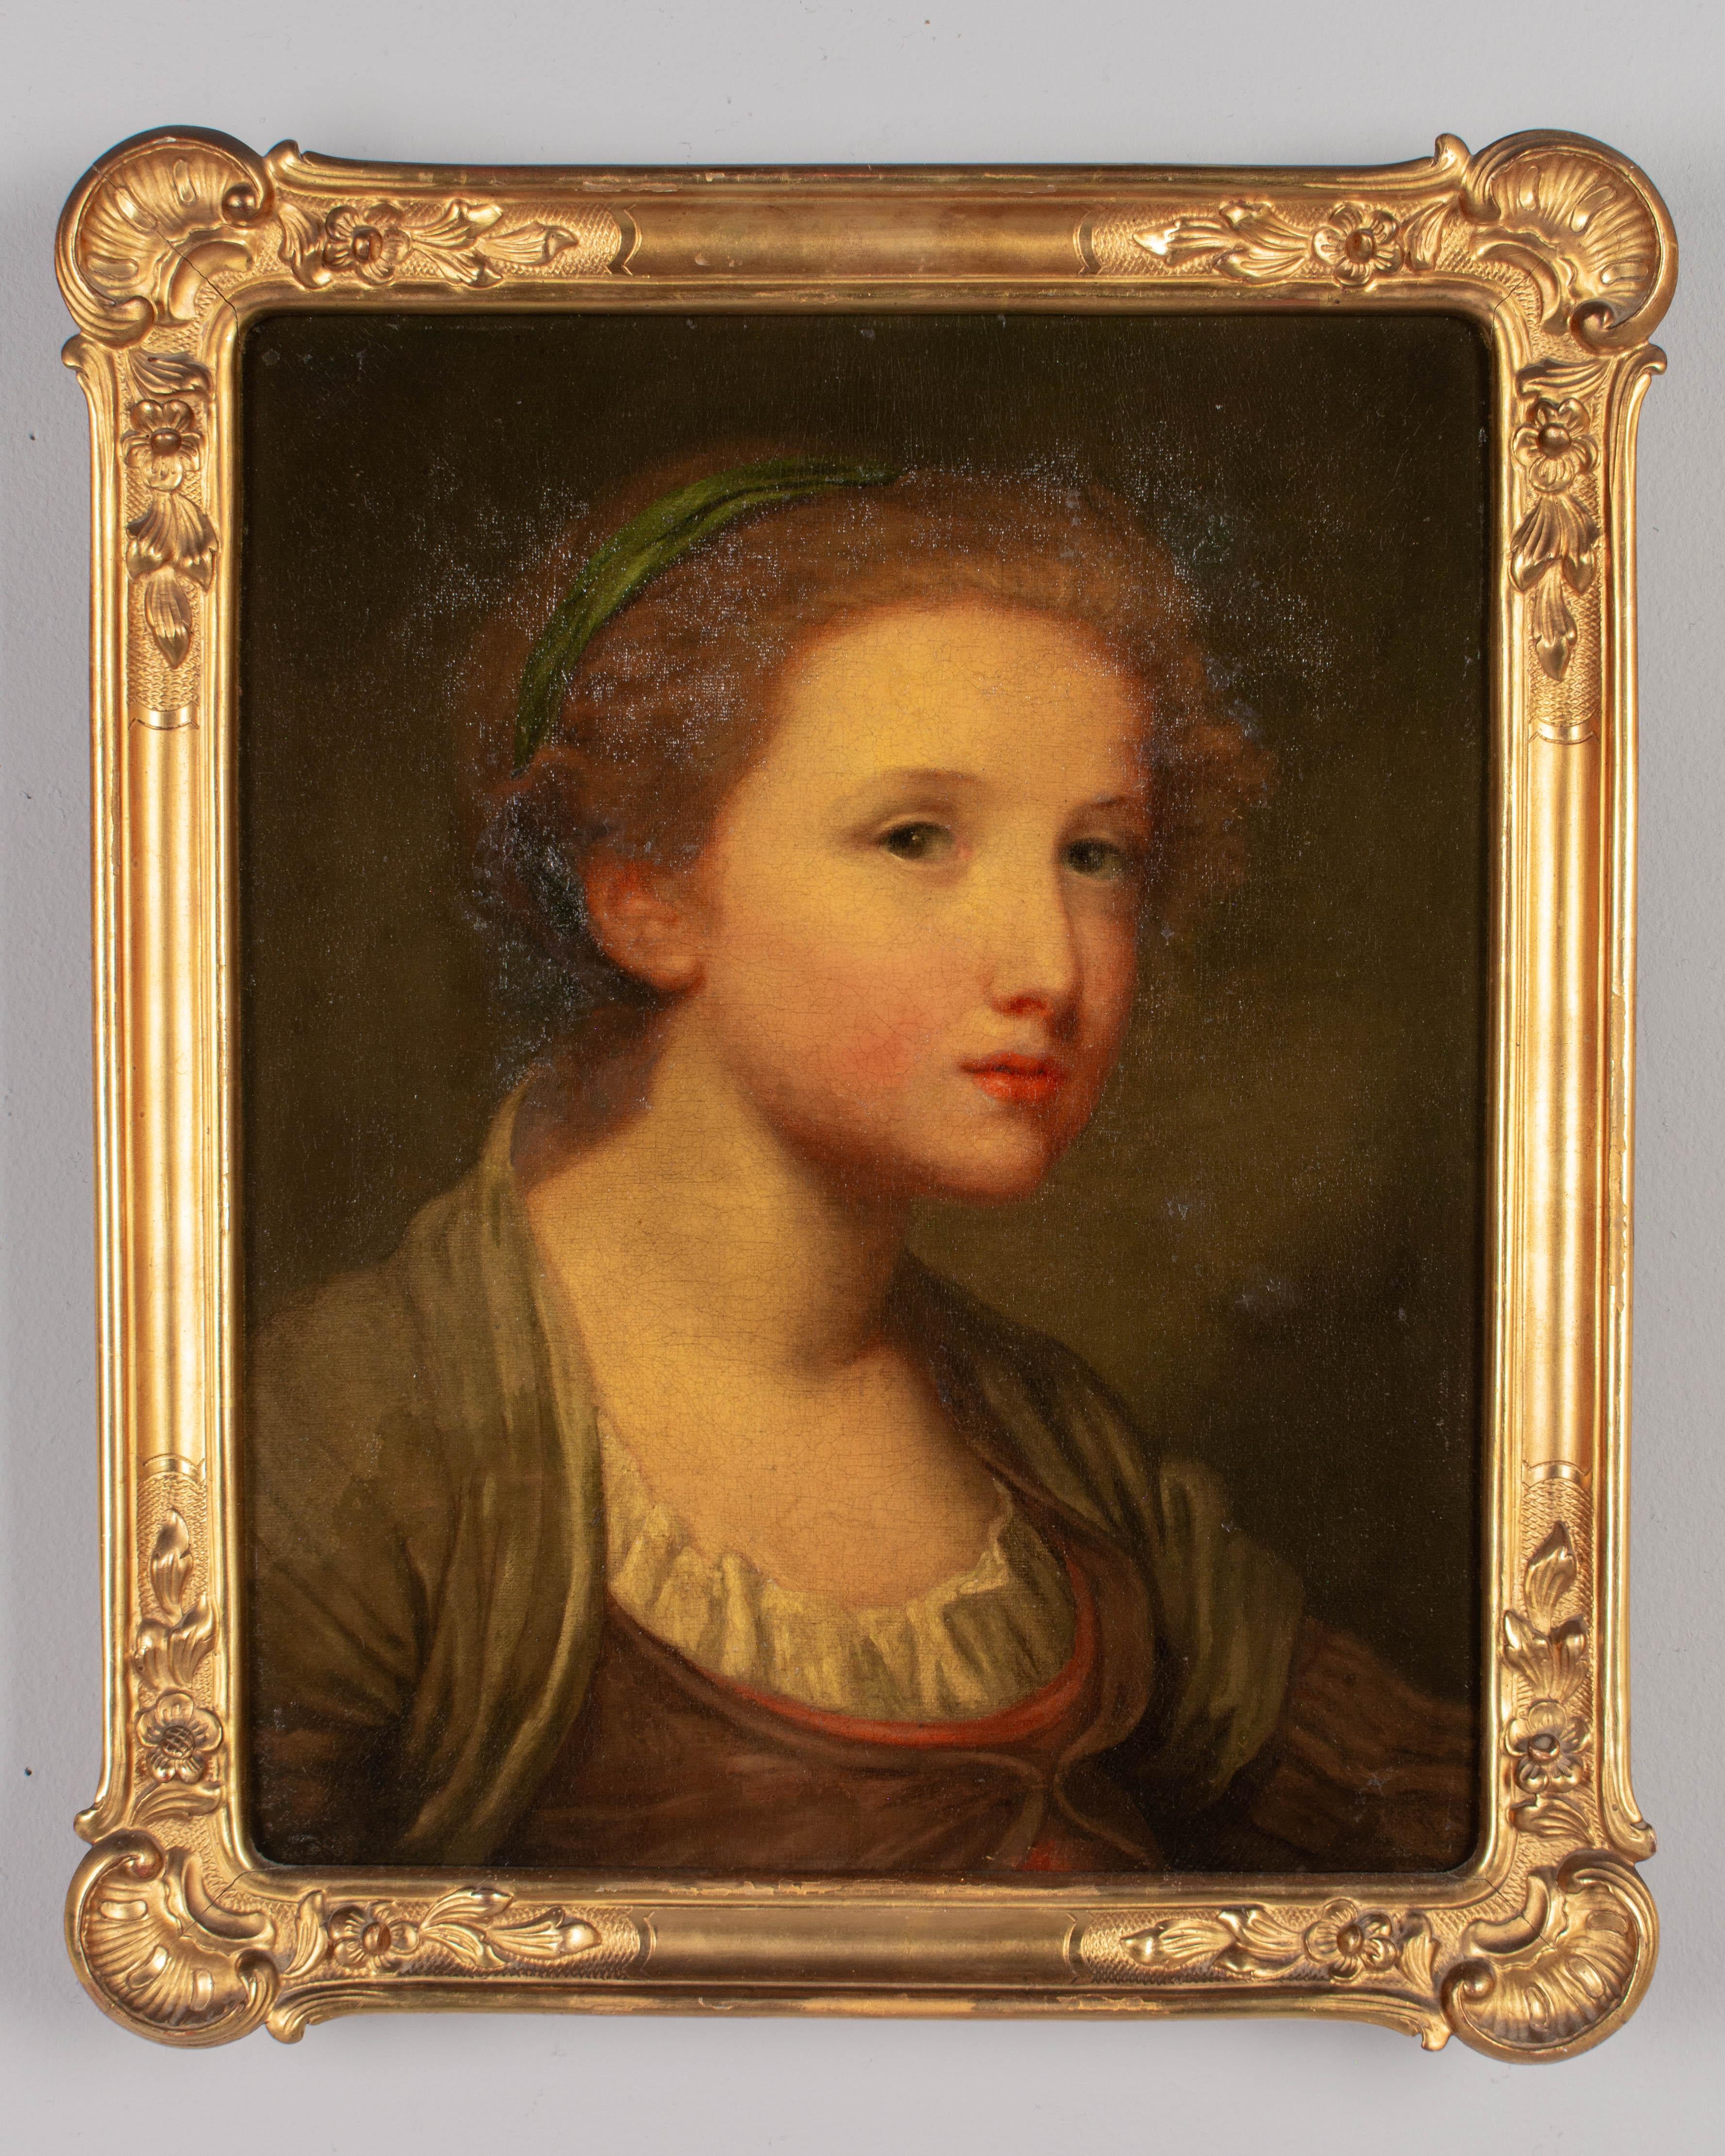 Portrait d'une jeune fille du XIXe siècle attribué à l'artiste français Jean-Baptiste Greuze (1725-1805). Huile sur toile. Non signé, peut-être un exemplaire de jeunesse de ce peintre prolifique connu pour ses charmants portraits. Dans un cadre